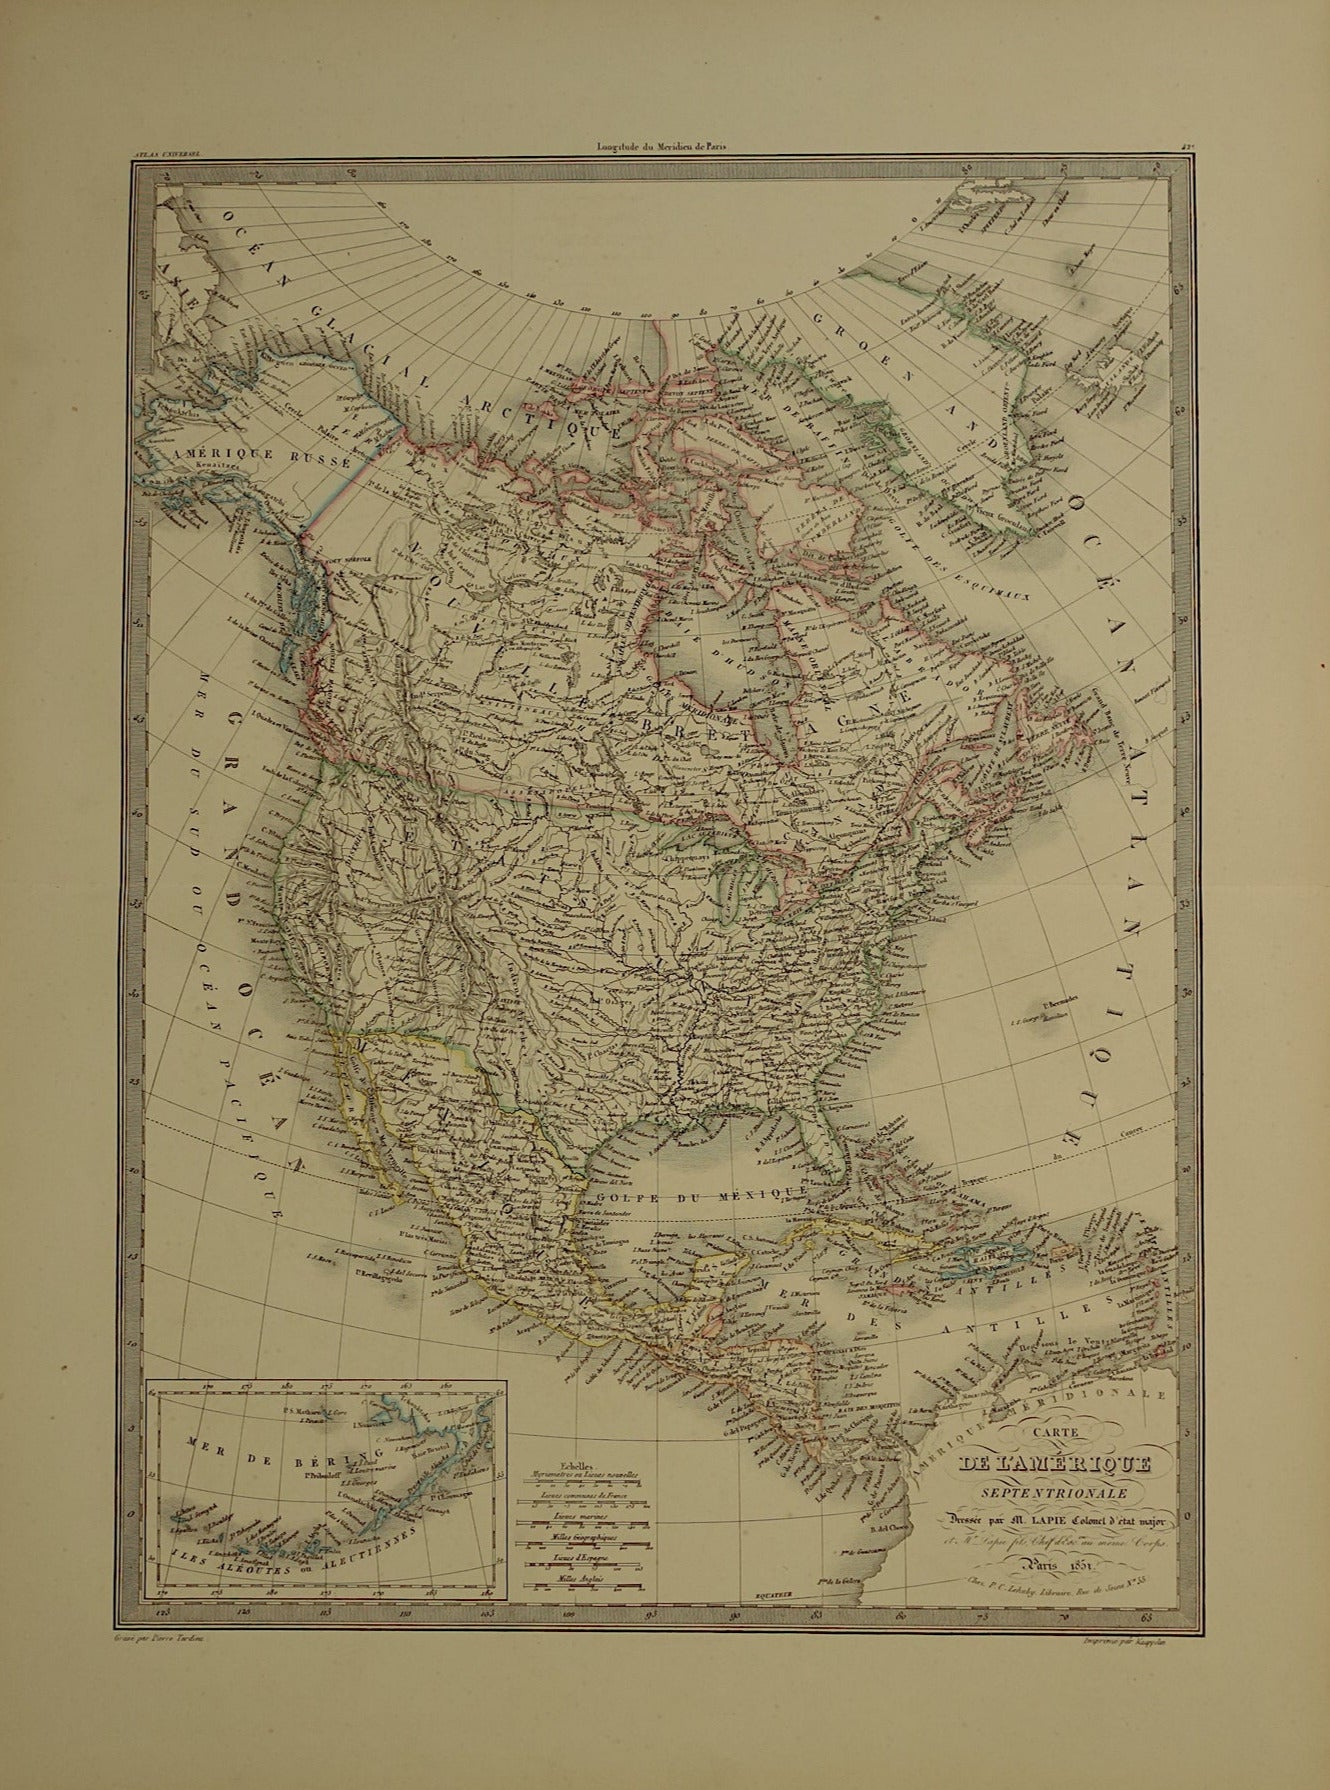 NOORD-AMERIKA grote antieke kaart uit 1851 - Oude landkaart VS Canada Mexico - originele vintage kaarten